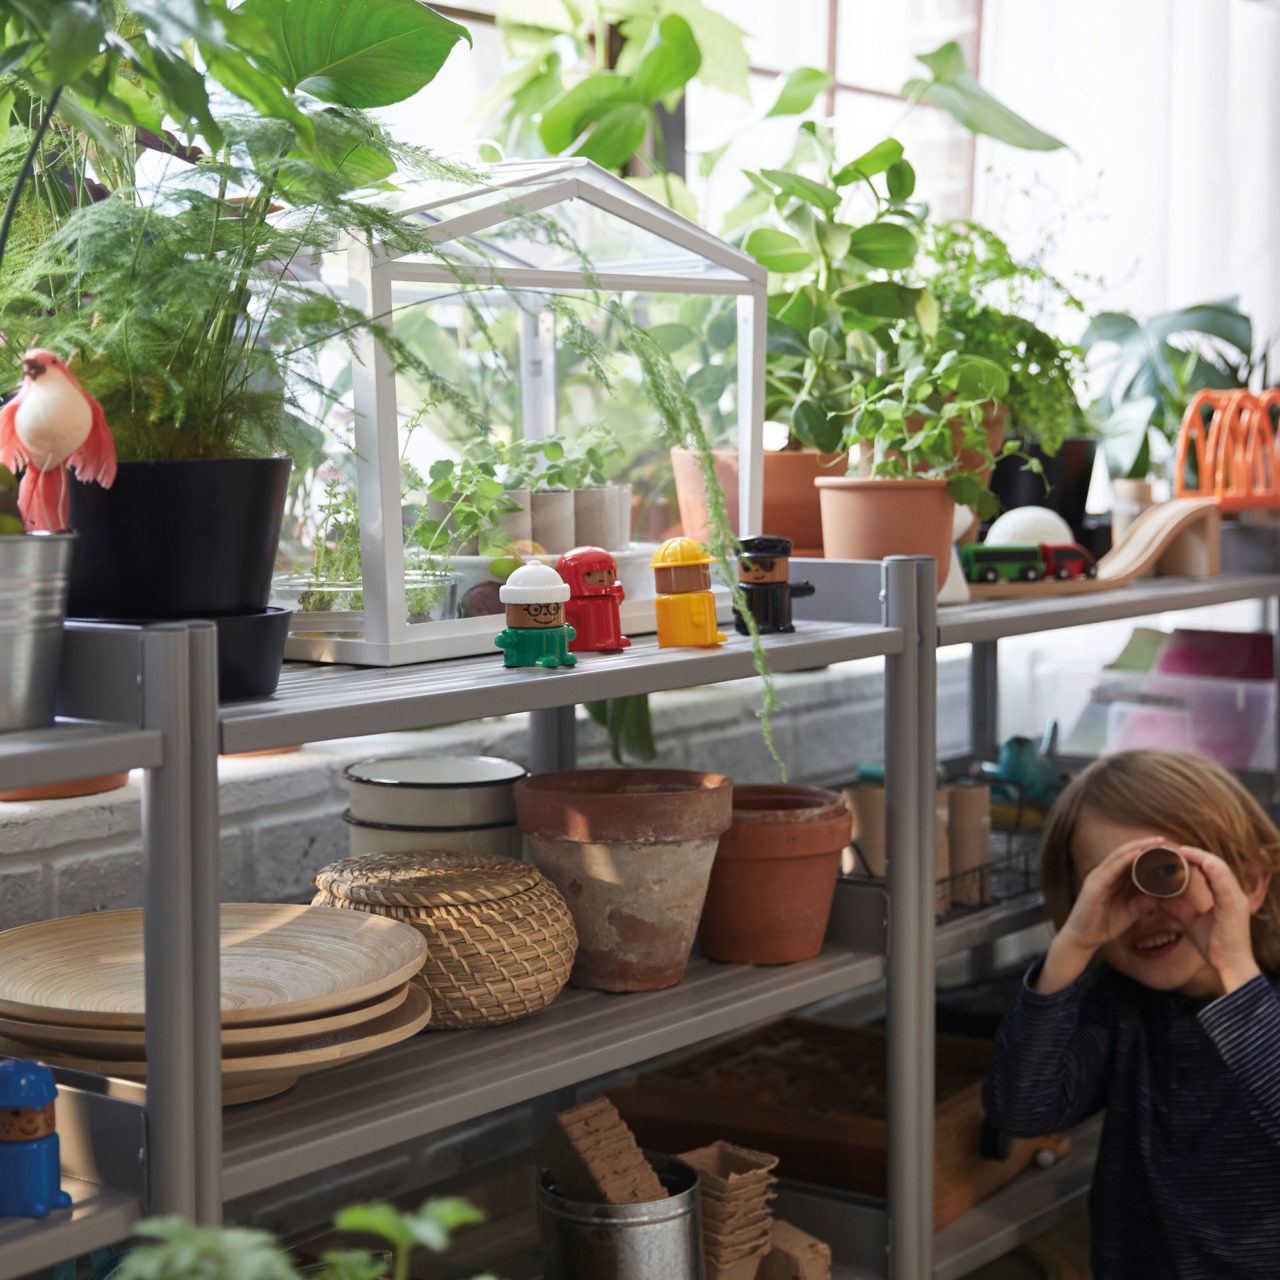 À côté d’étagères chargées de plantes vertes et d’accessoires de plantation, un enfant regarde à travers un tube en carton.